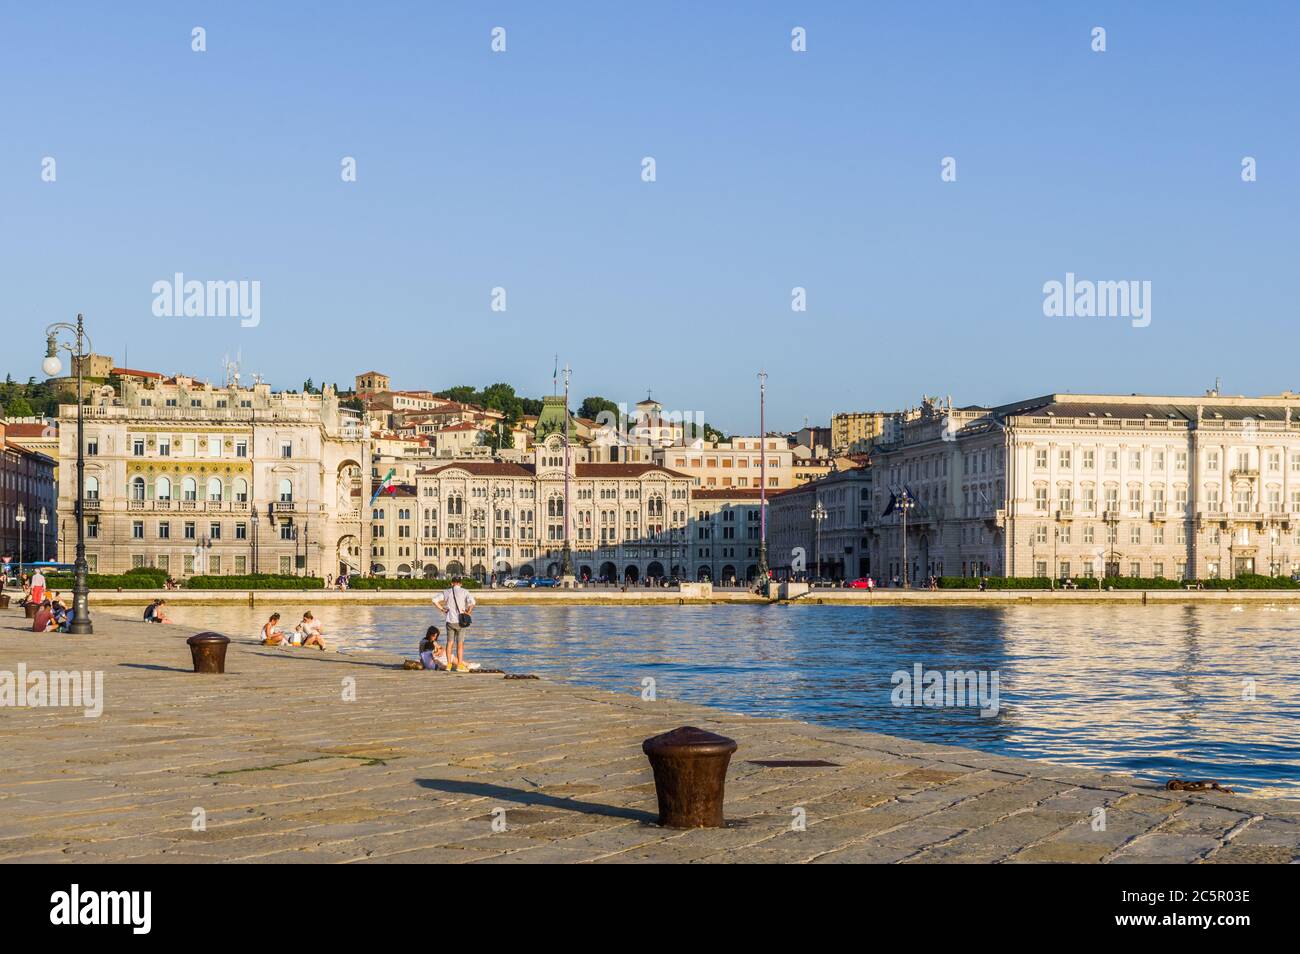 Trieste, Italie (27 juin 2020) - la place centrale de la Piazza Unità d'Italia, représentée de Molo Audace au coucher du soleil Banque D'Images